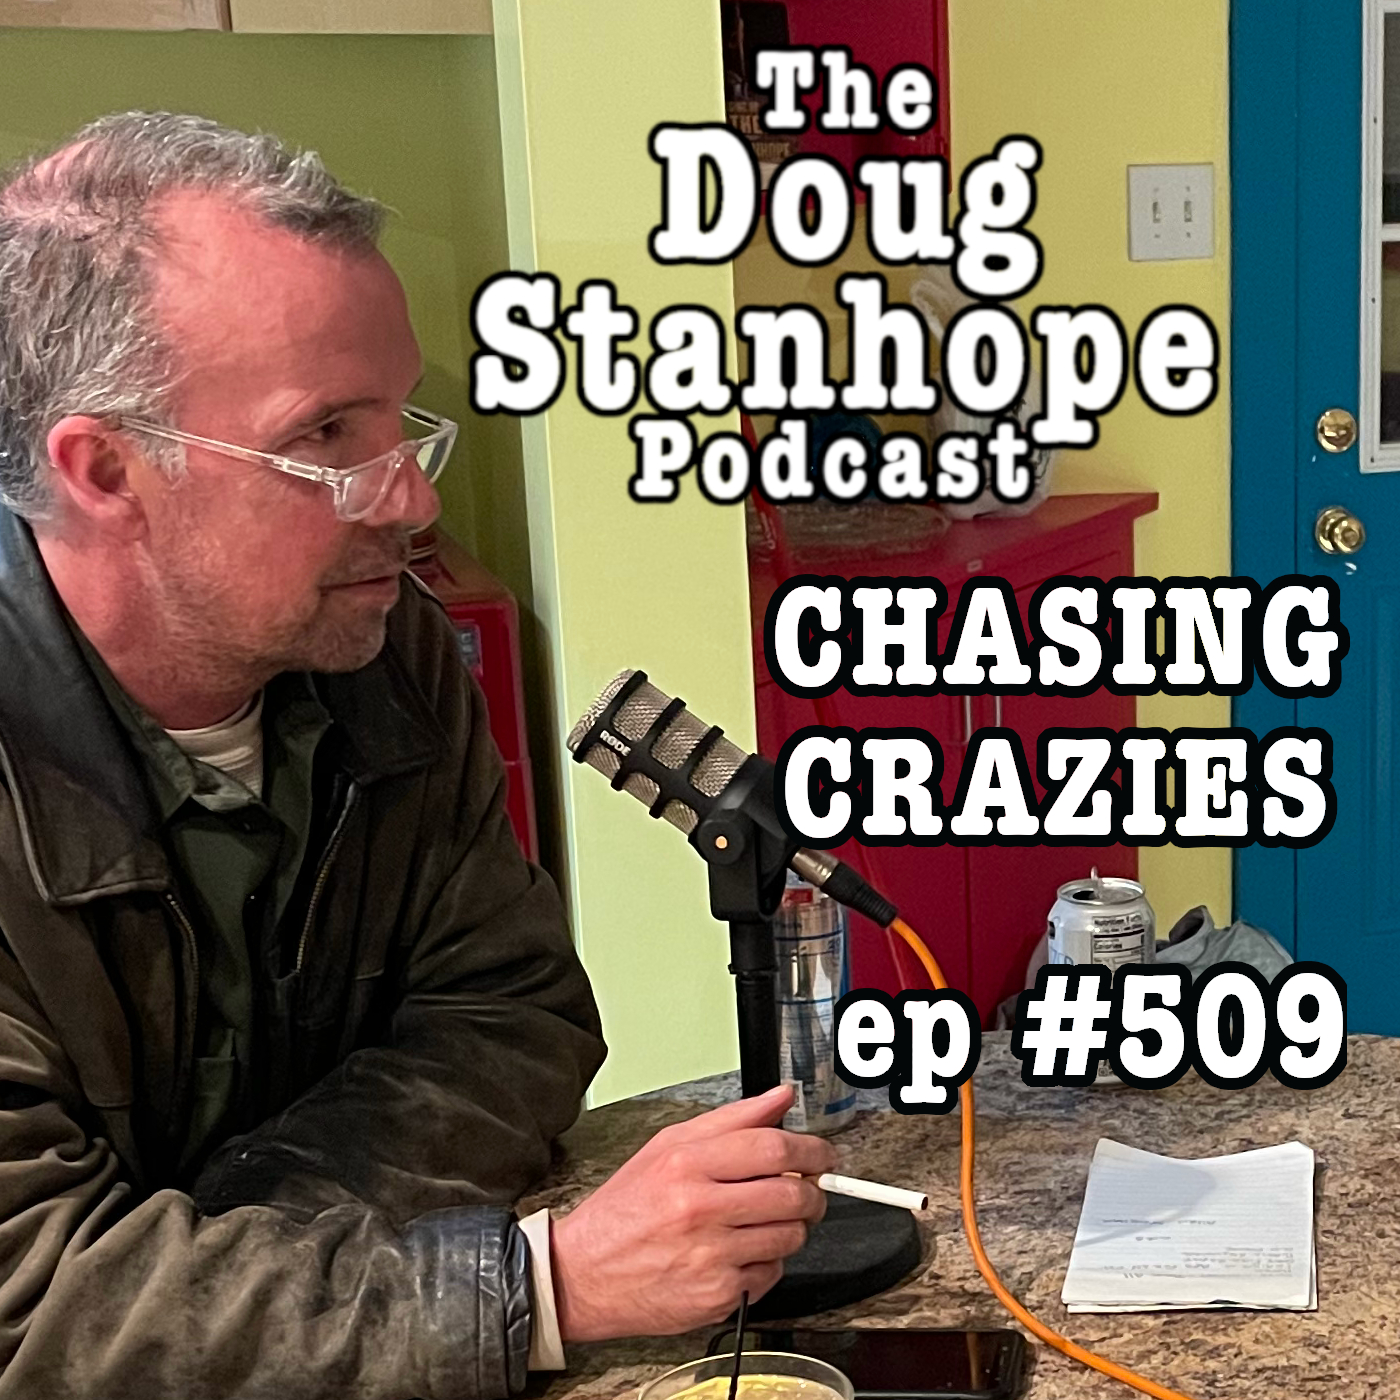 Bonus Episode: Ep.#509 - ”Chasing Crazies”